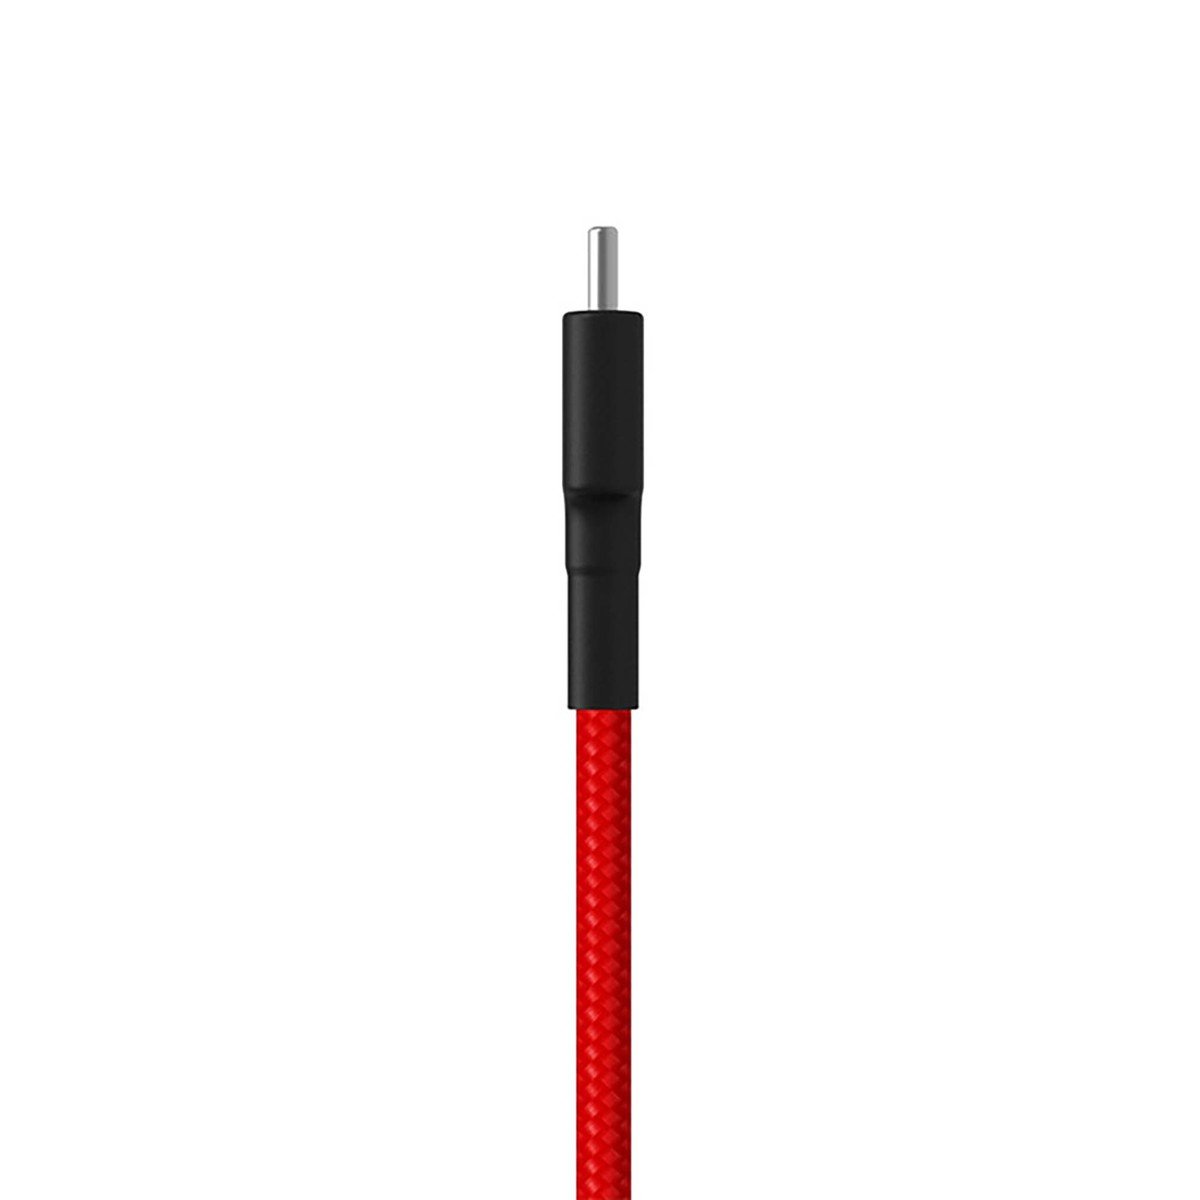 MI Type-C Cable SJV4110GL 1M